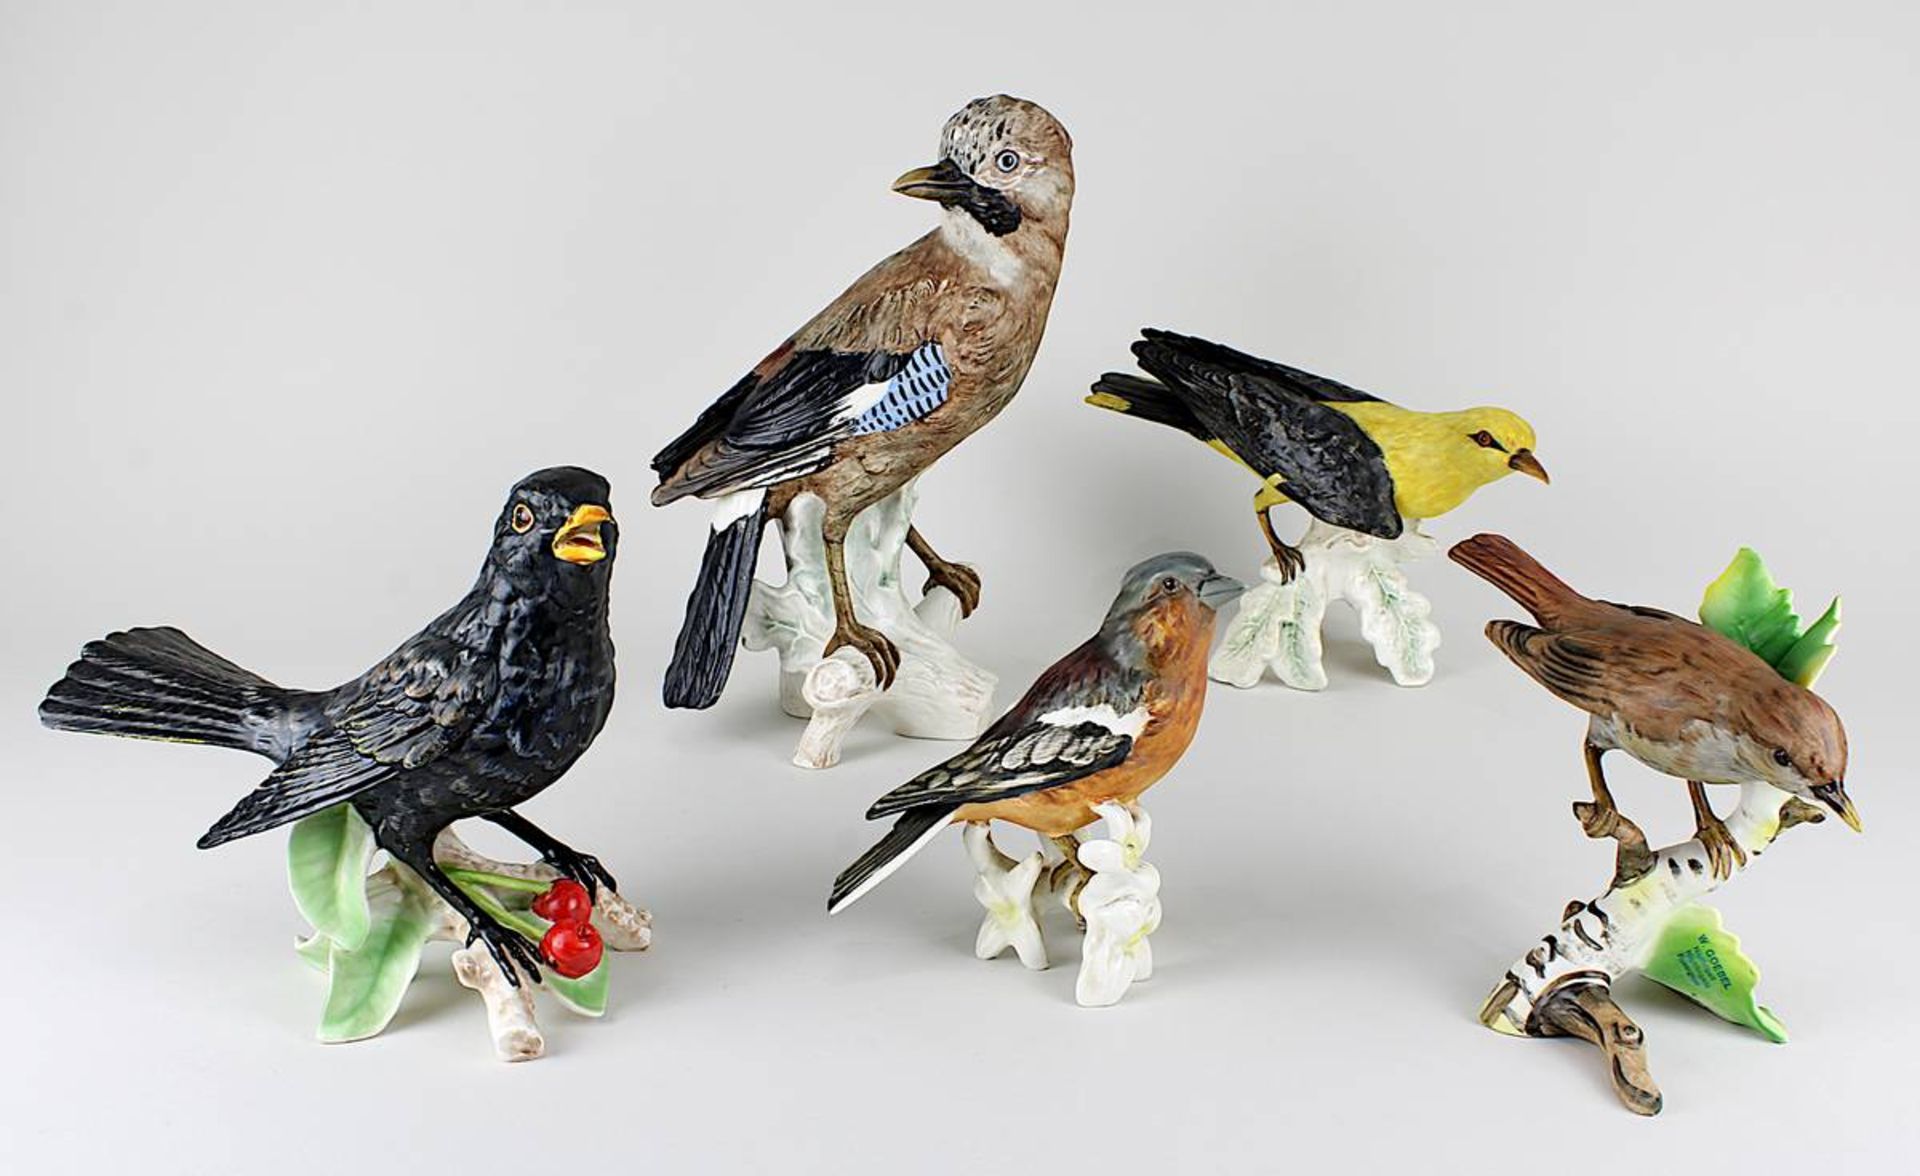 Fünf Vogel-Porzellanfiguren, Goebel, deutsch 2. H. 20. Jh., farbig staffiert, bestehend aus: